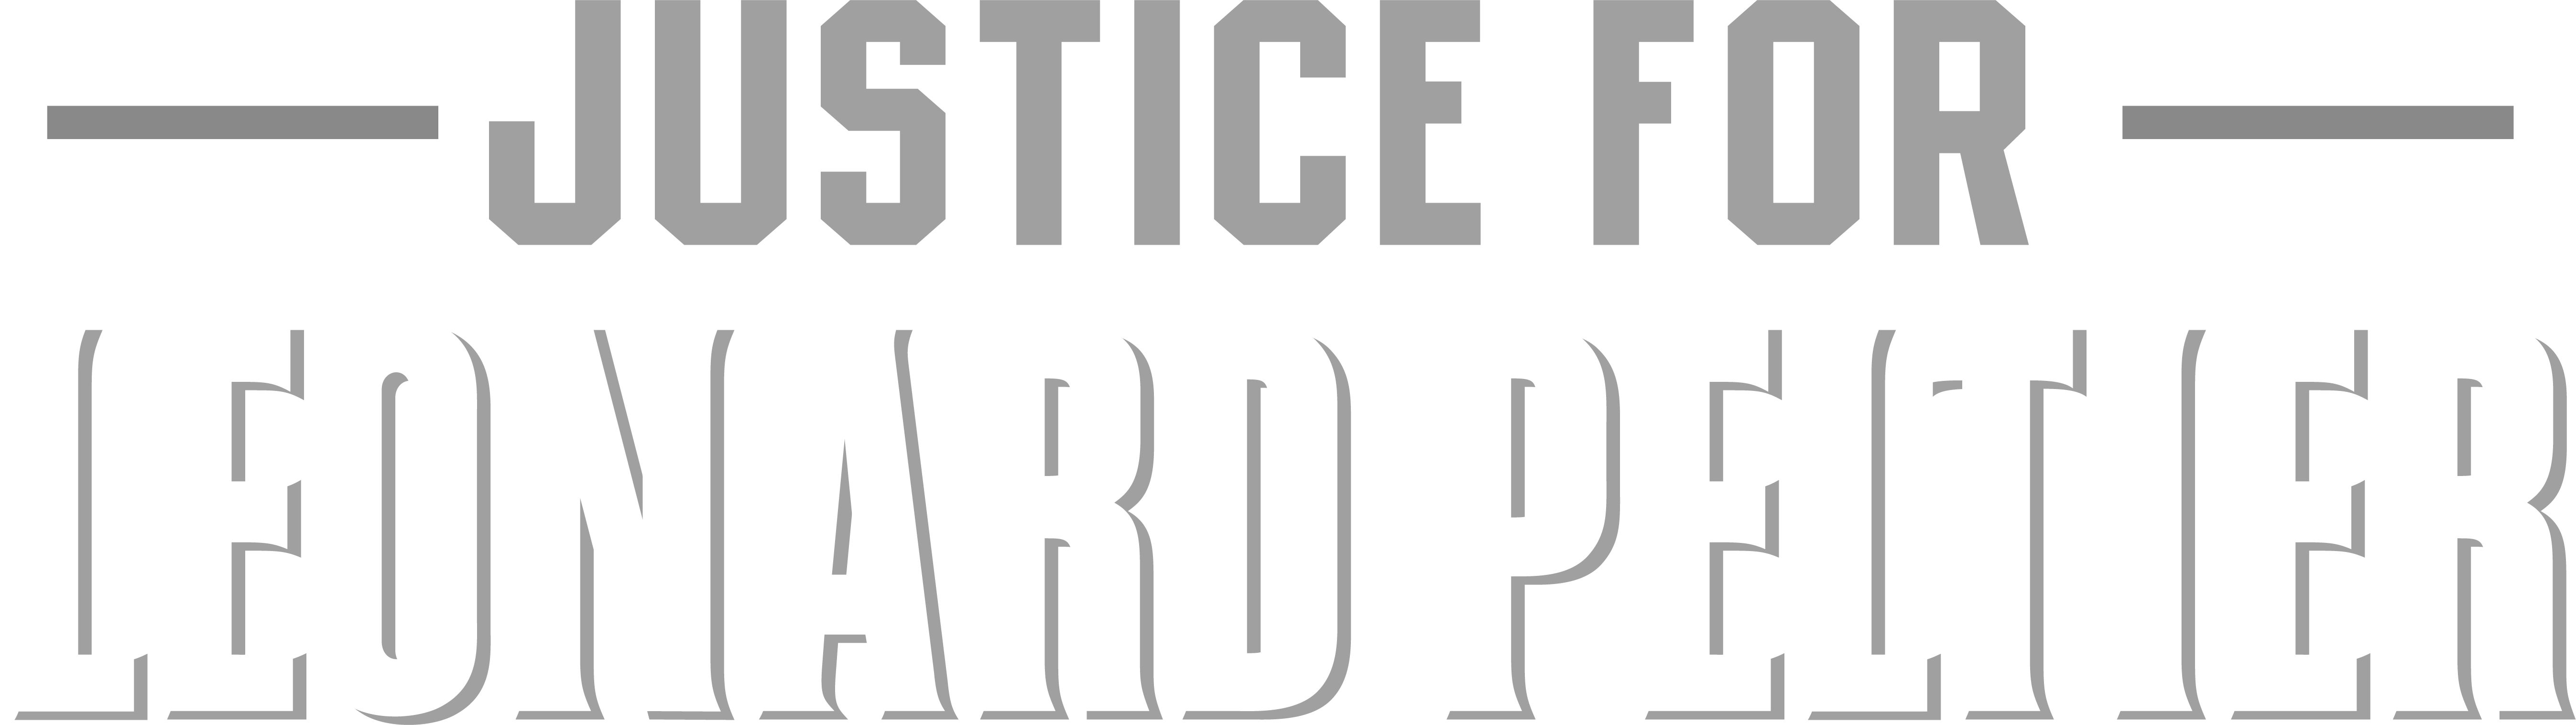 JUSTICE FOR LEONARD PELTIER